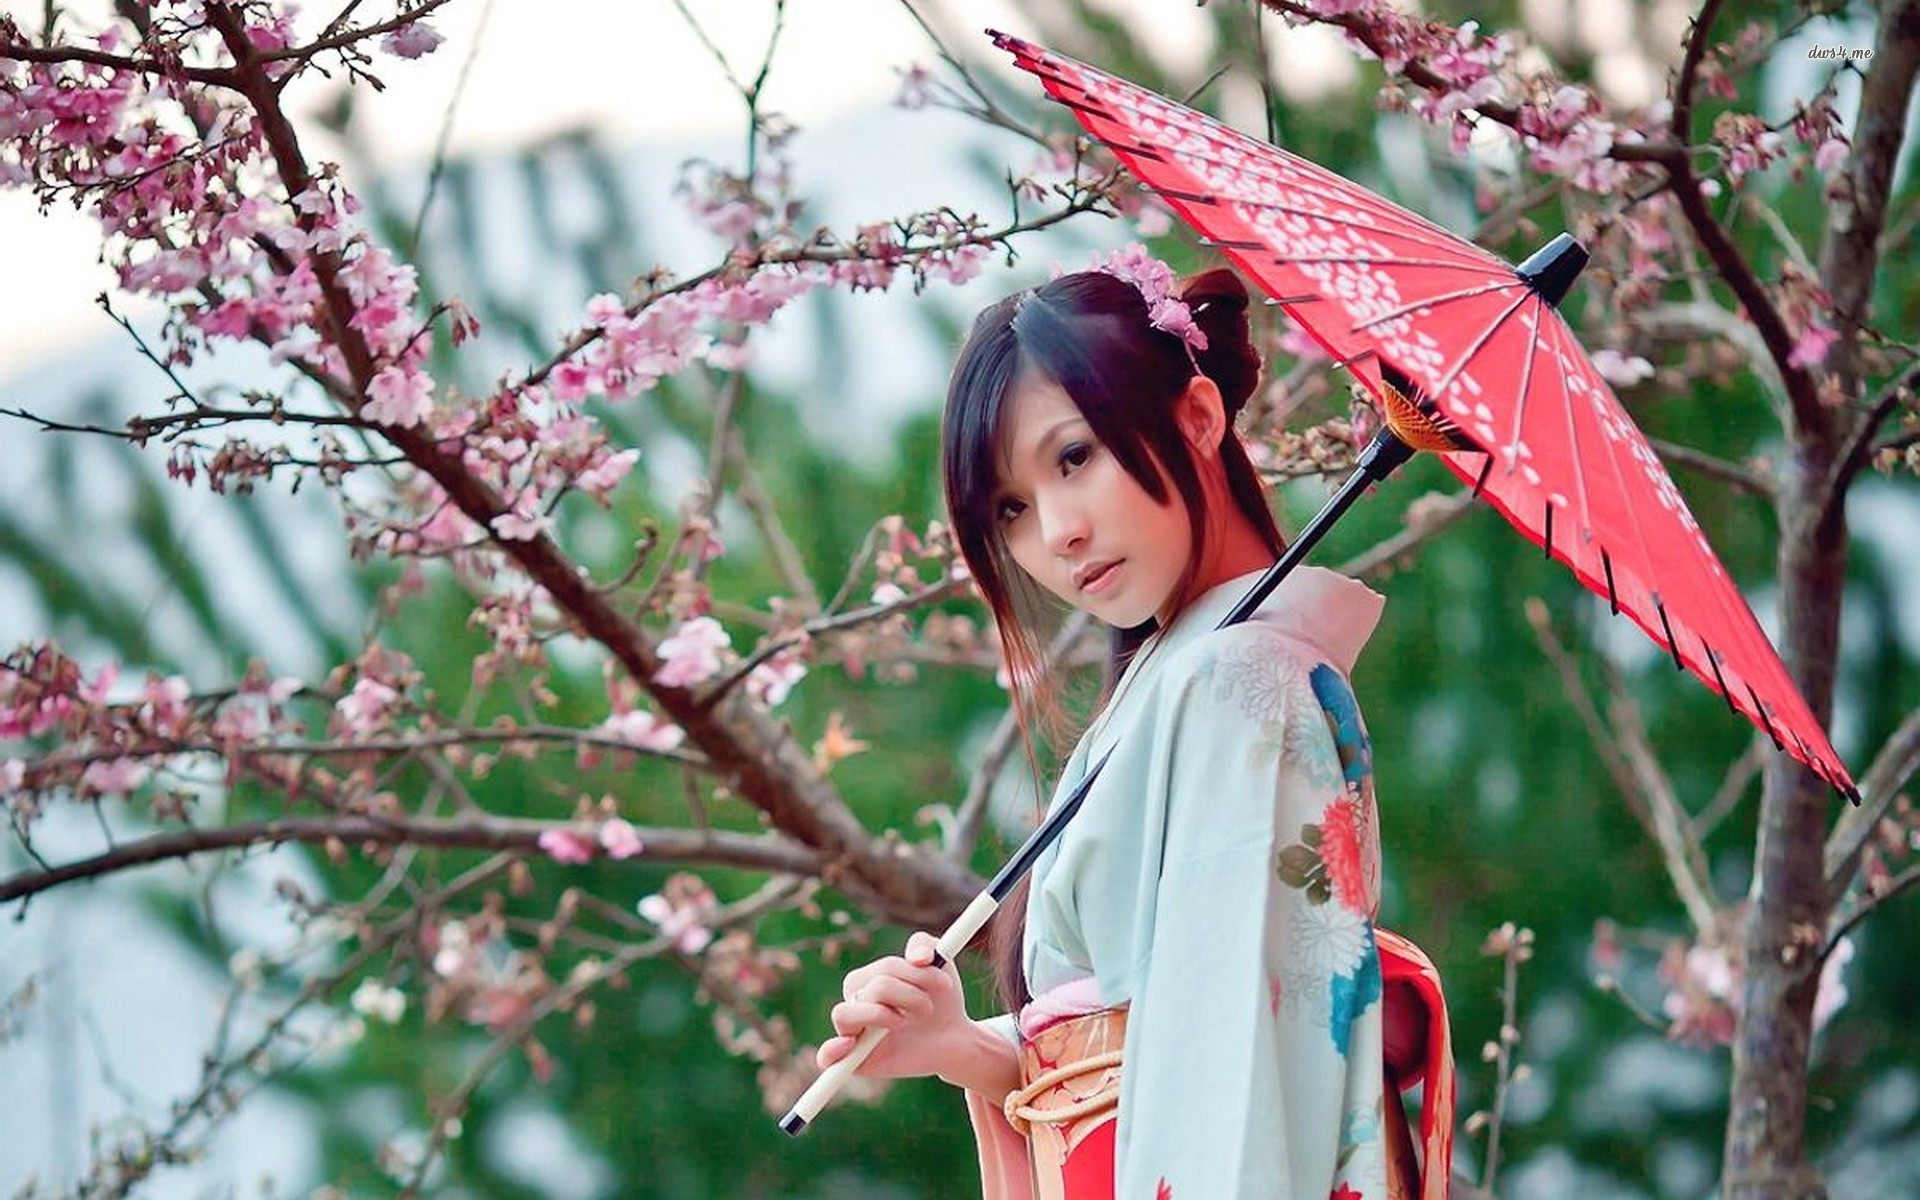 Japanese Wallpaper Girl Holding Japapese Umbrella